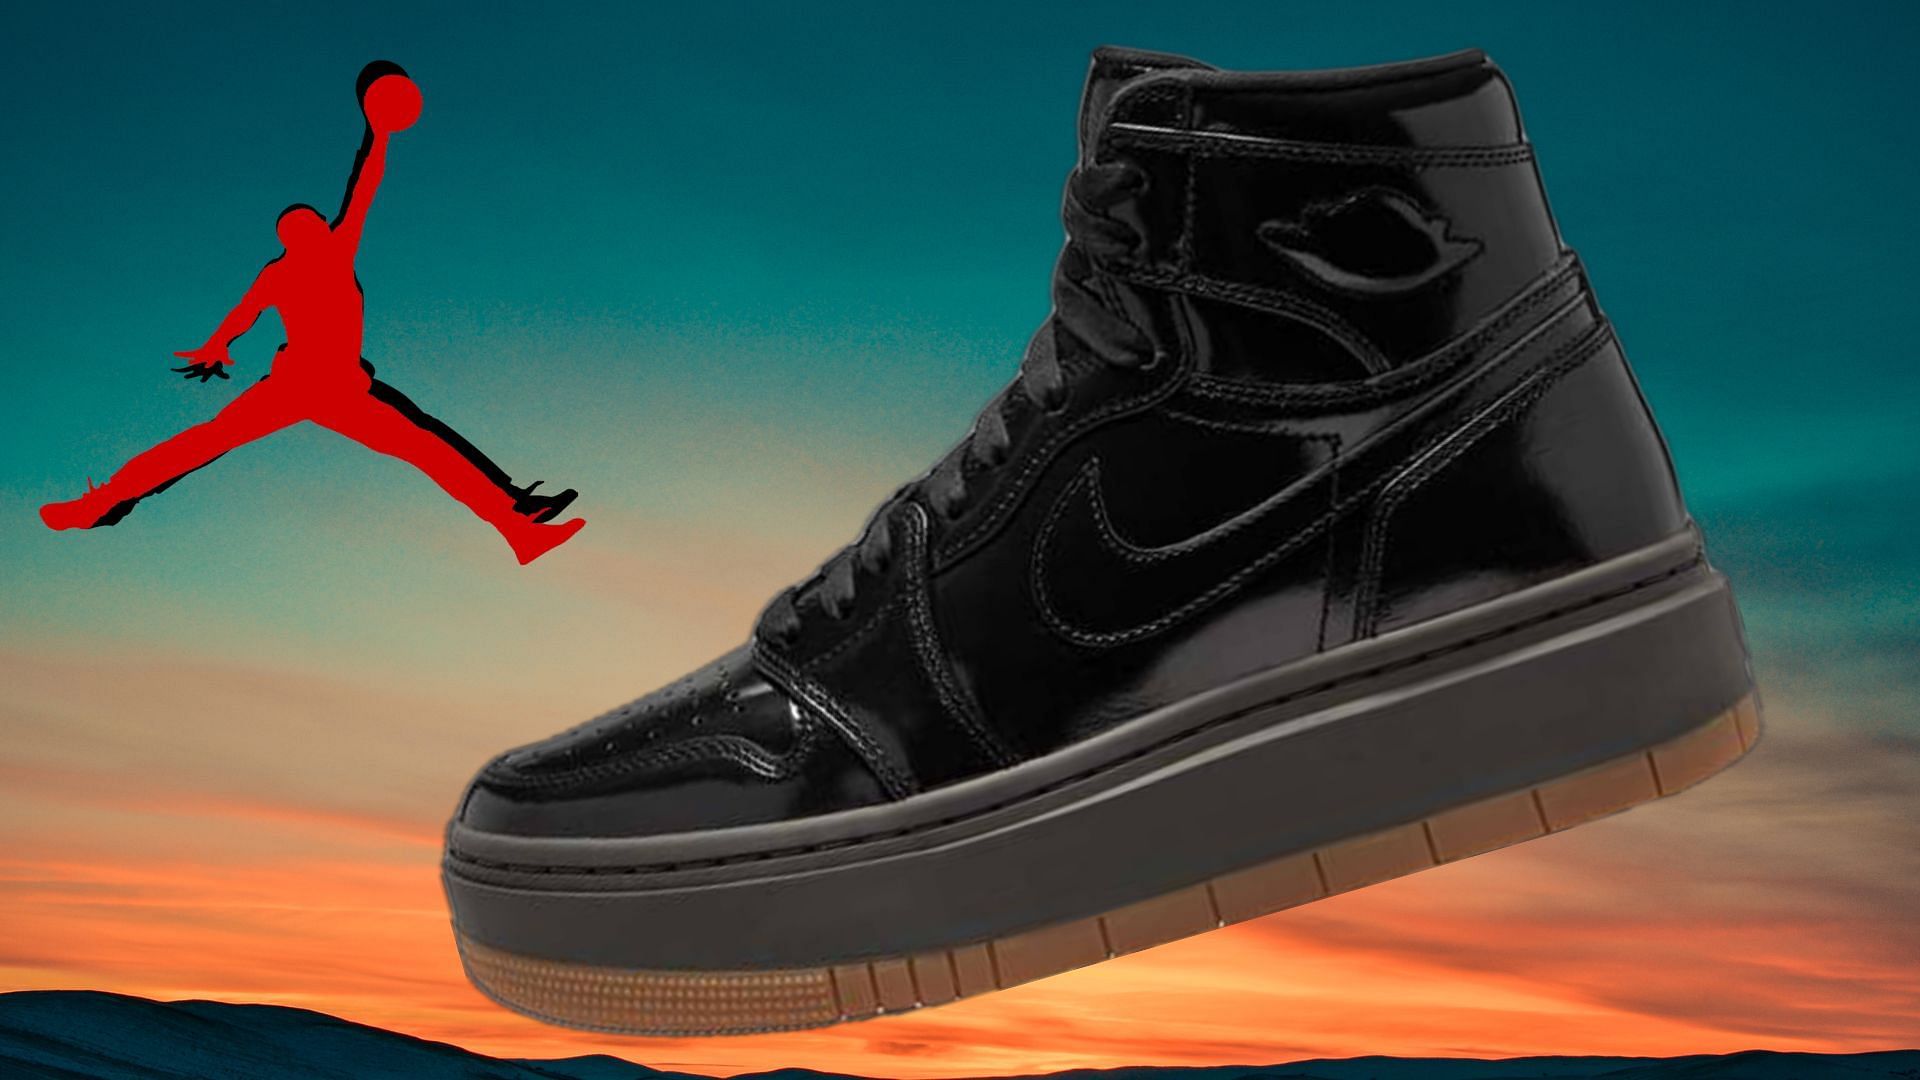 Air Jordan 1 High Elevate sneakers (Image via Sole Retriever)